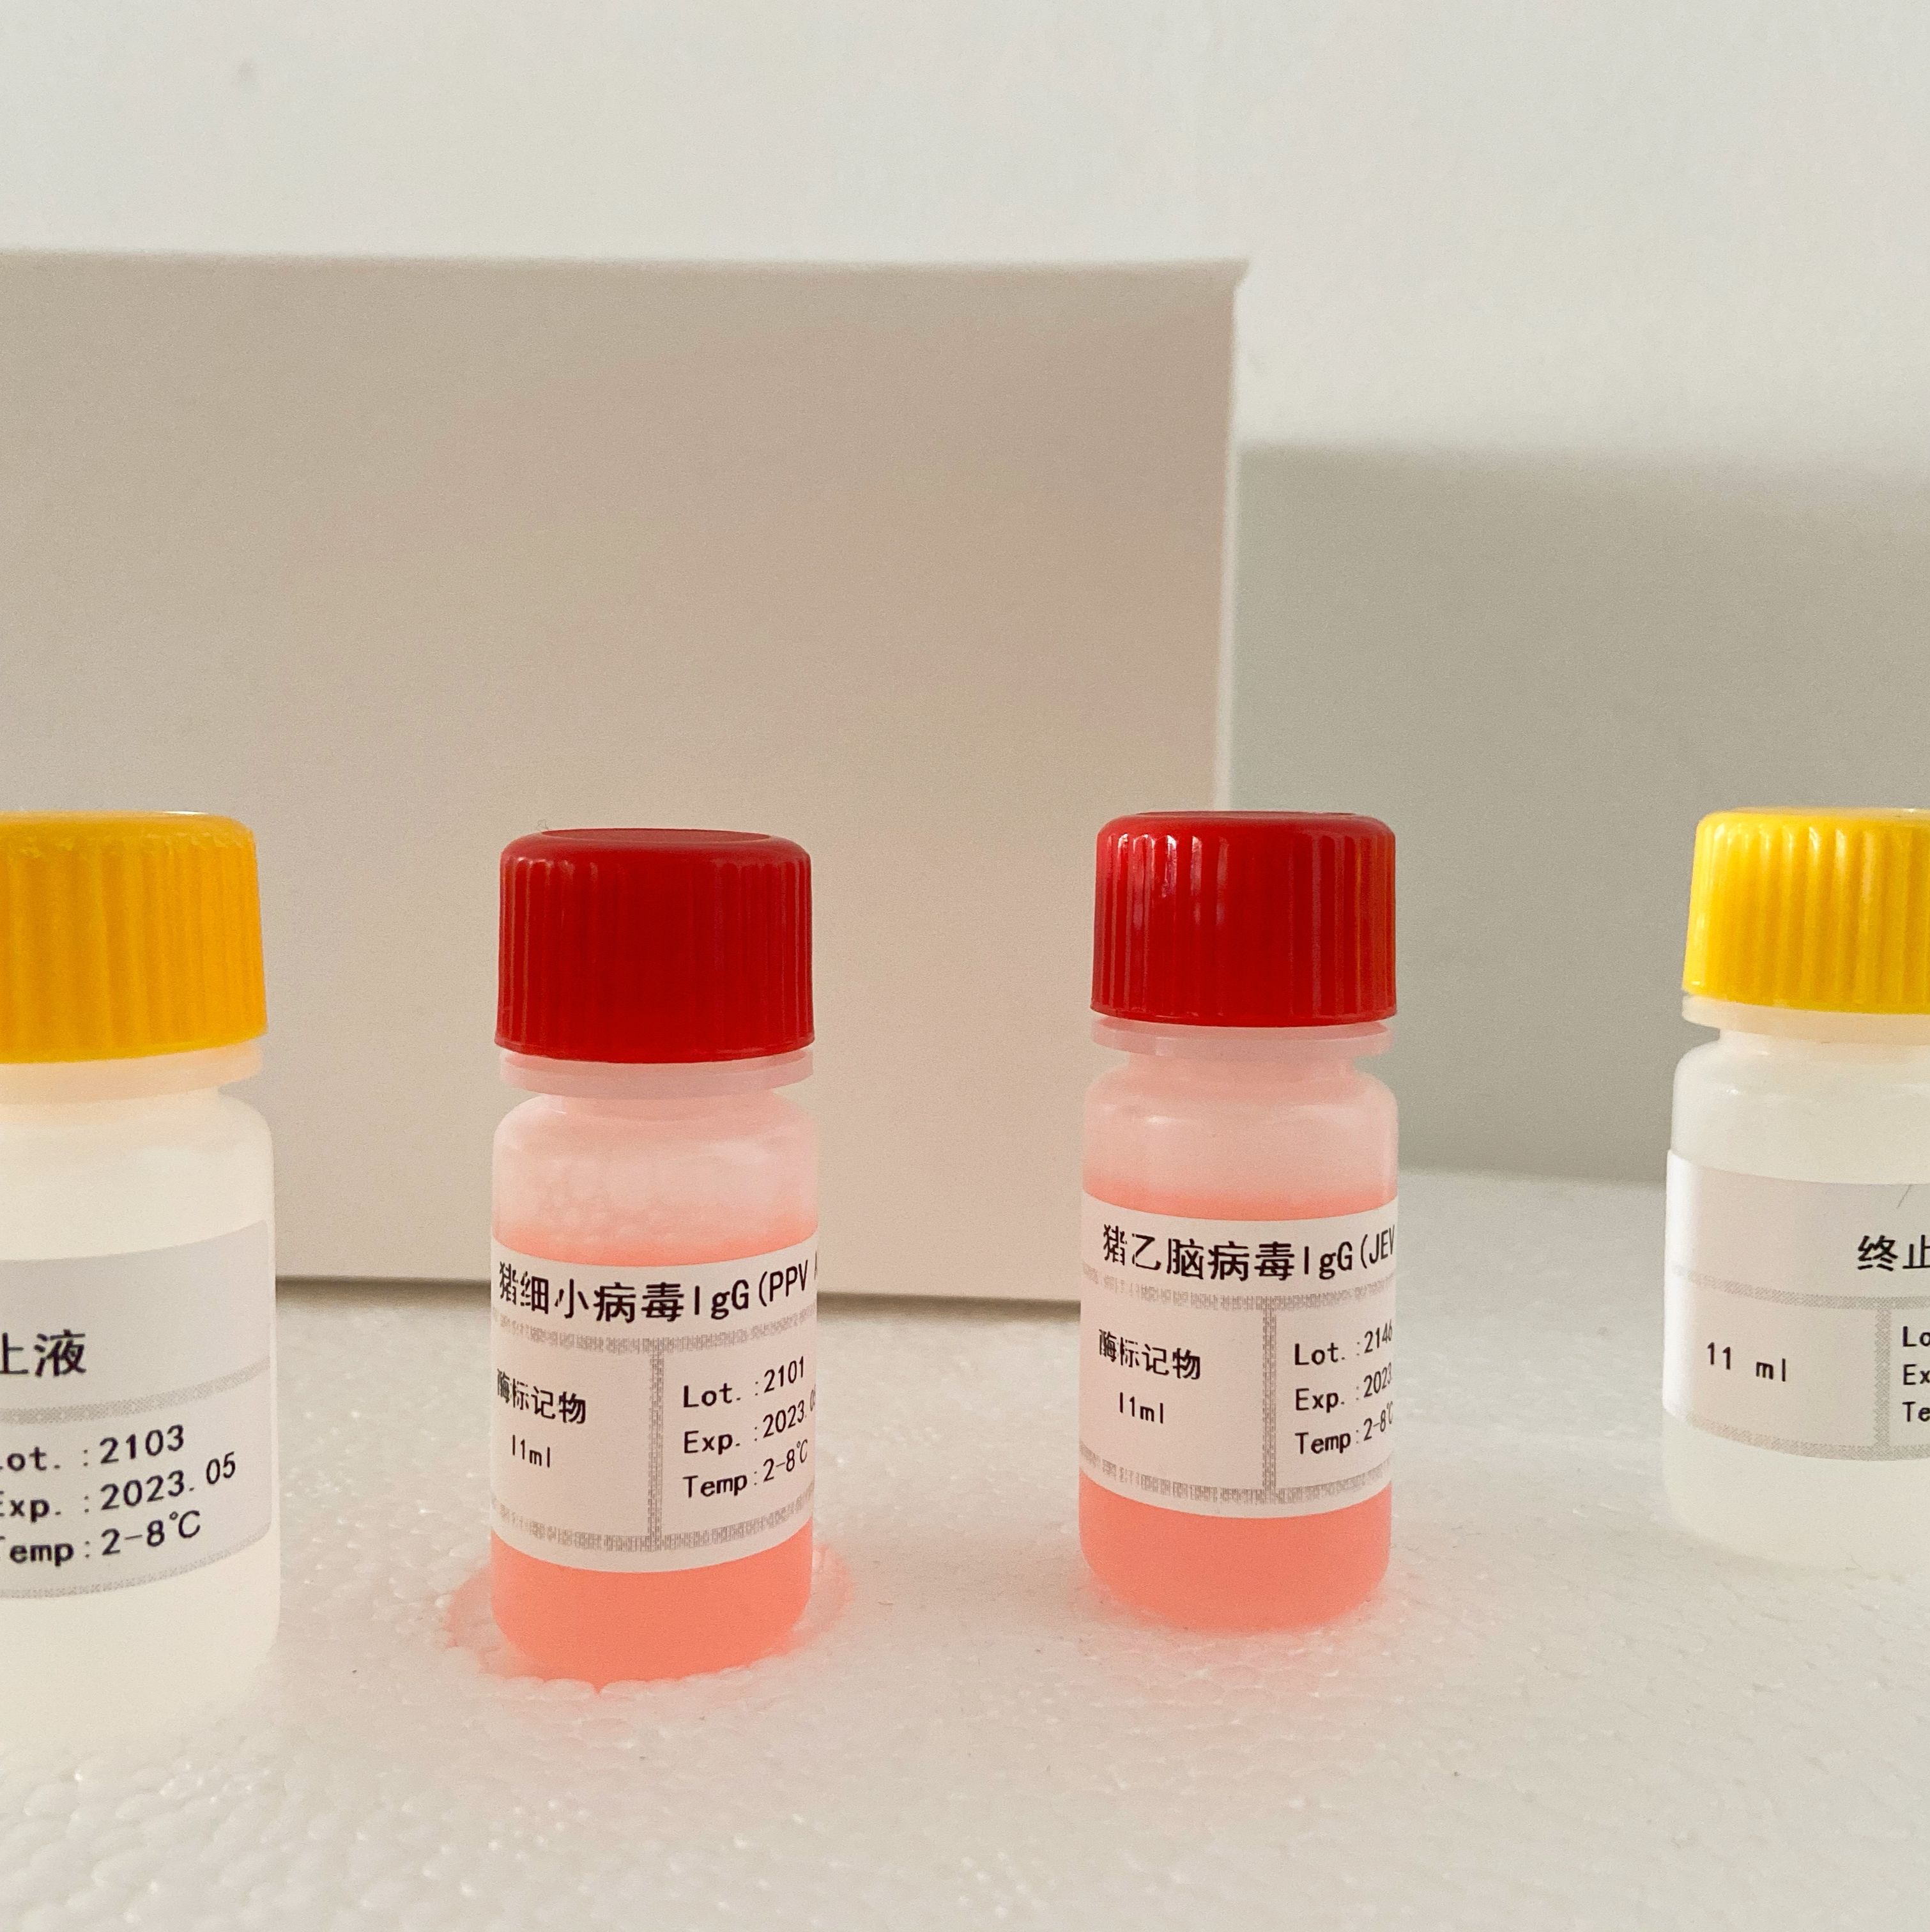 人细胞角蛋白21-1片段(CYFRA21-1)ELISA试剂盒